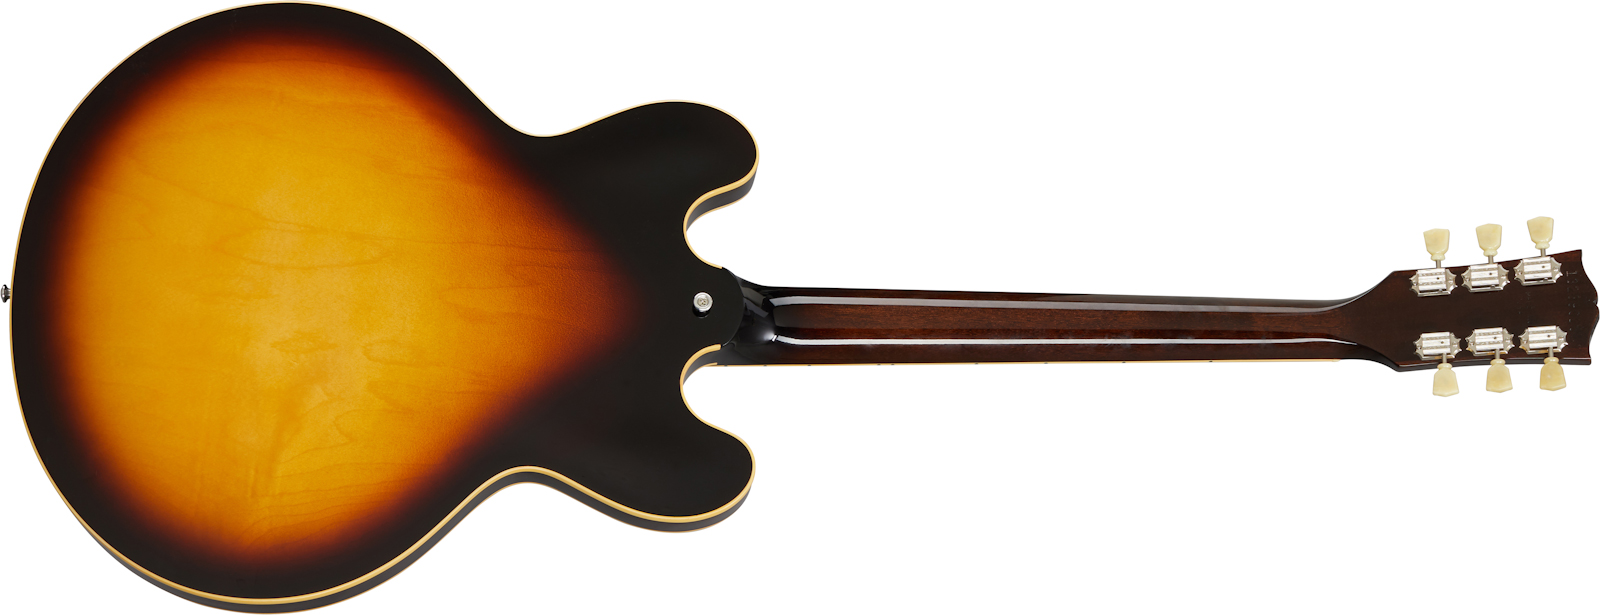 Gibson Es-345 Lh Original Gaucher 2h Ht Rw - Vintage Burst - Linkshandige elektrische gitaar - Variation 1